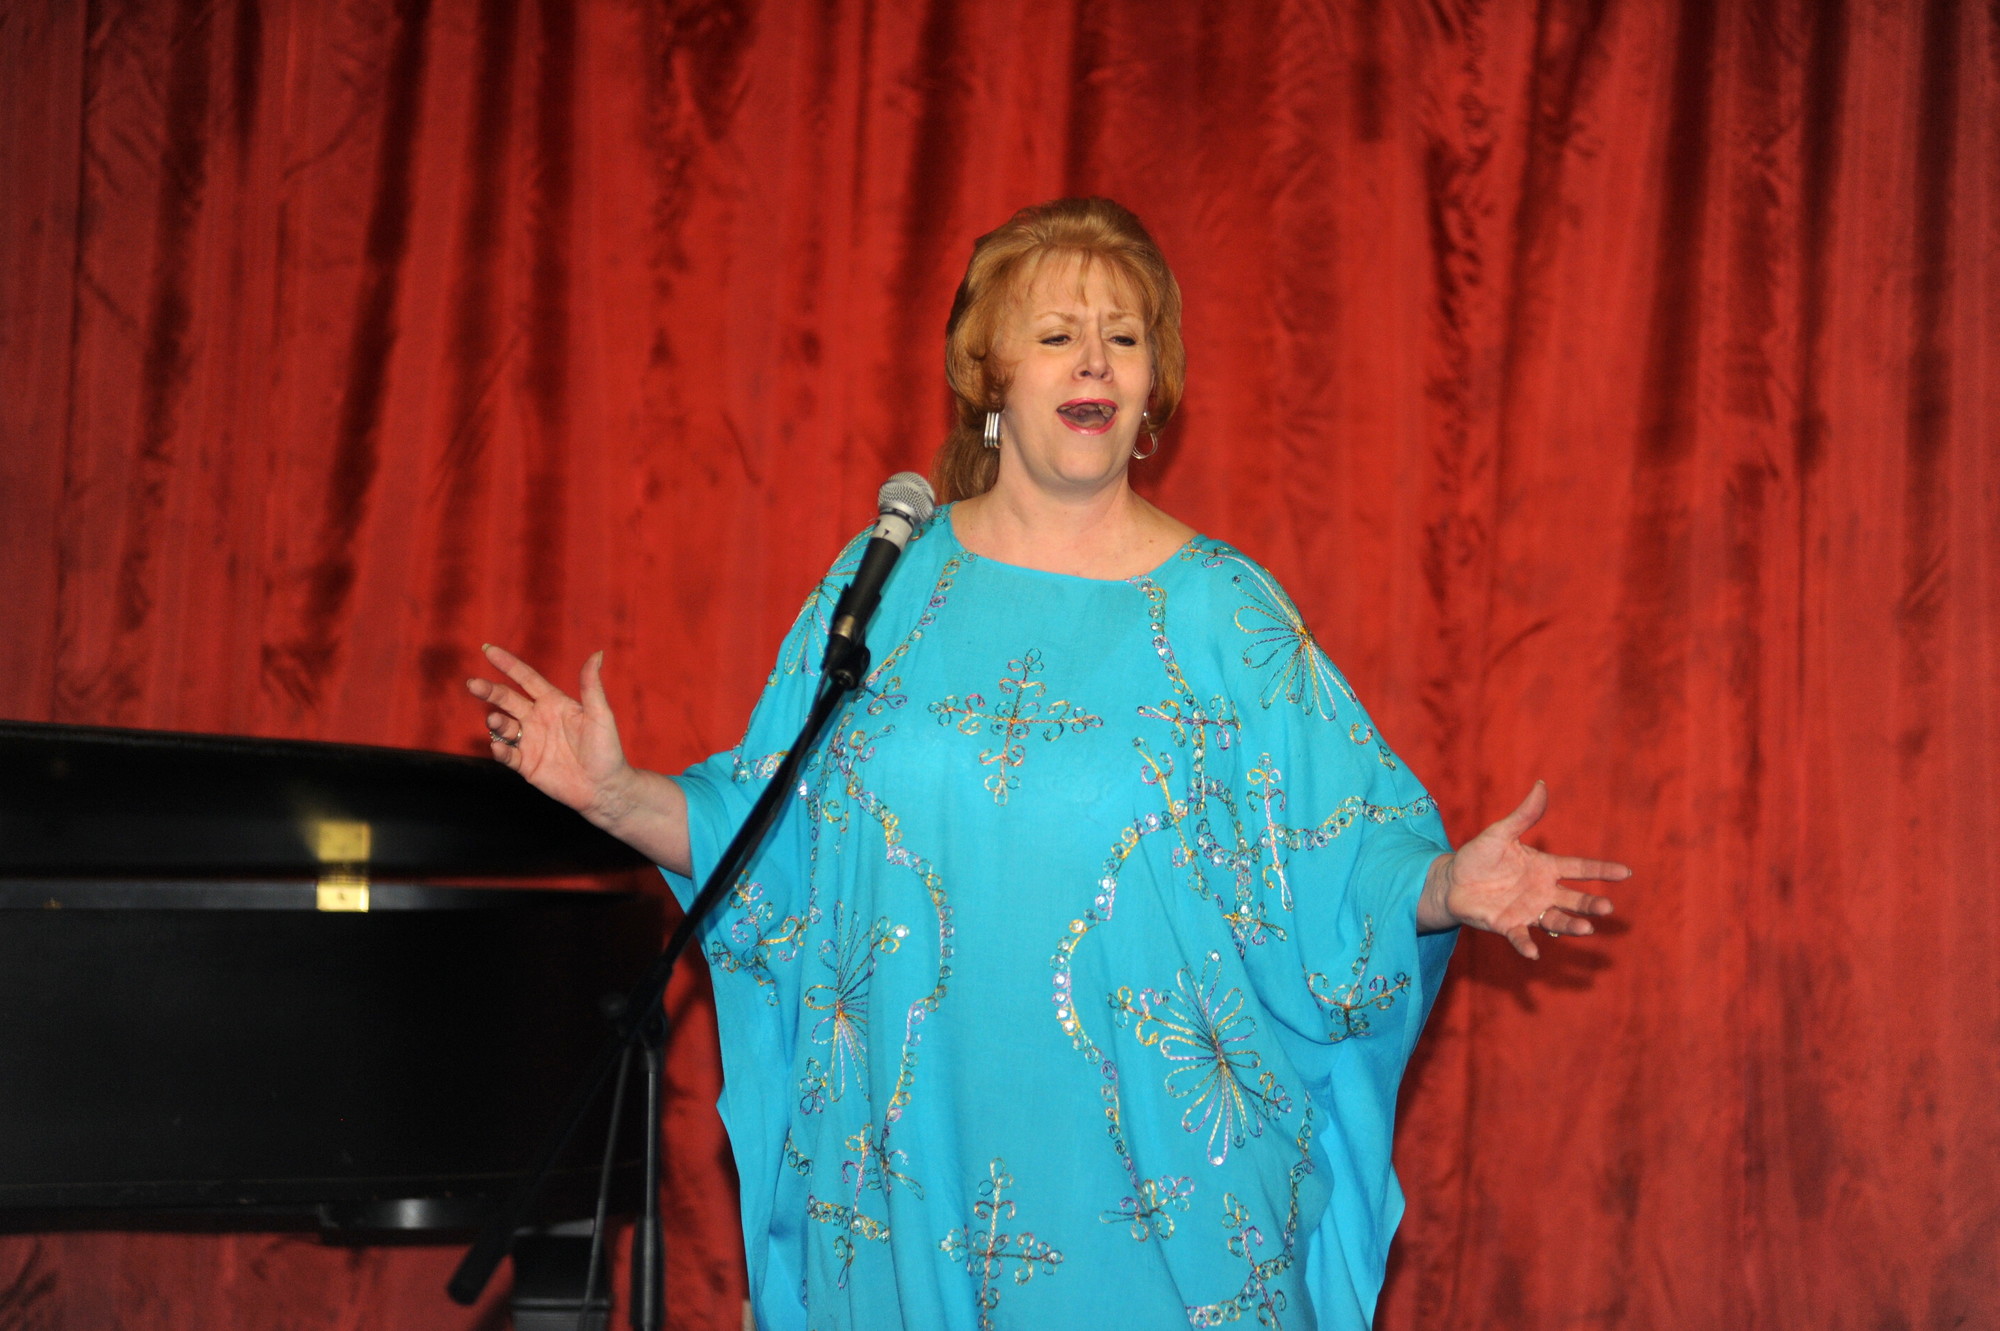 Evelyn Macave sang opera in memory of Anita Darian.